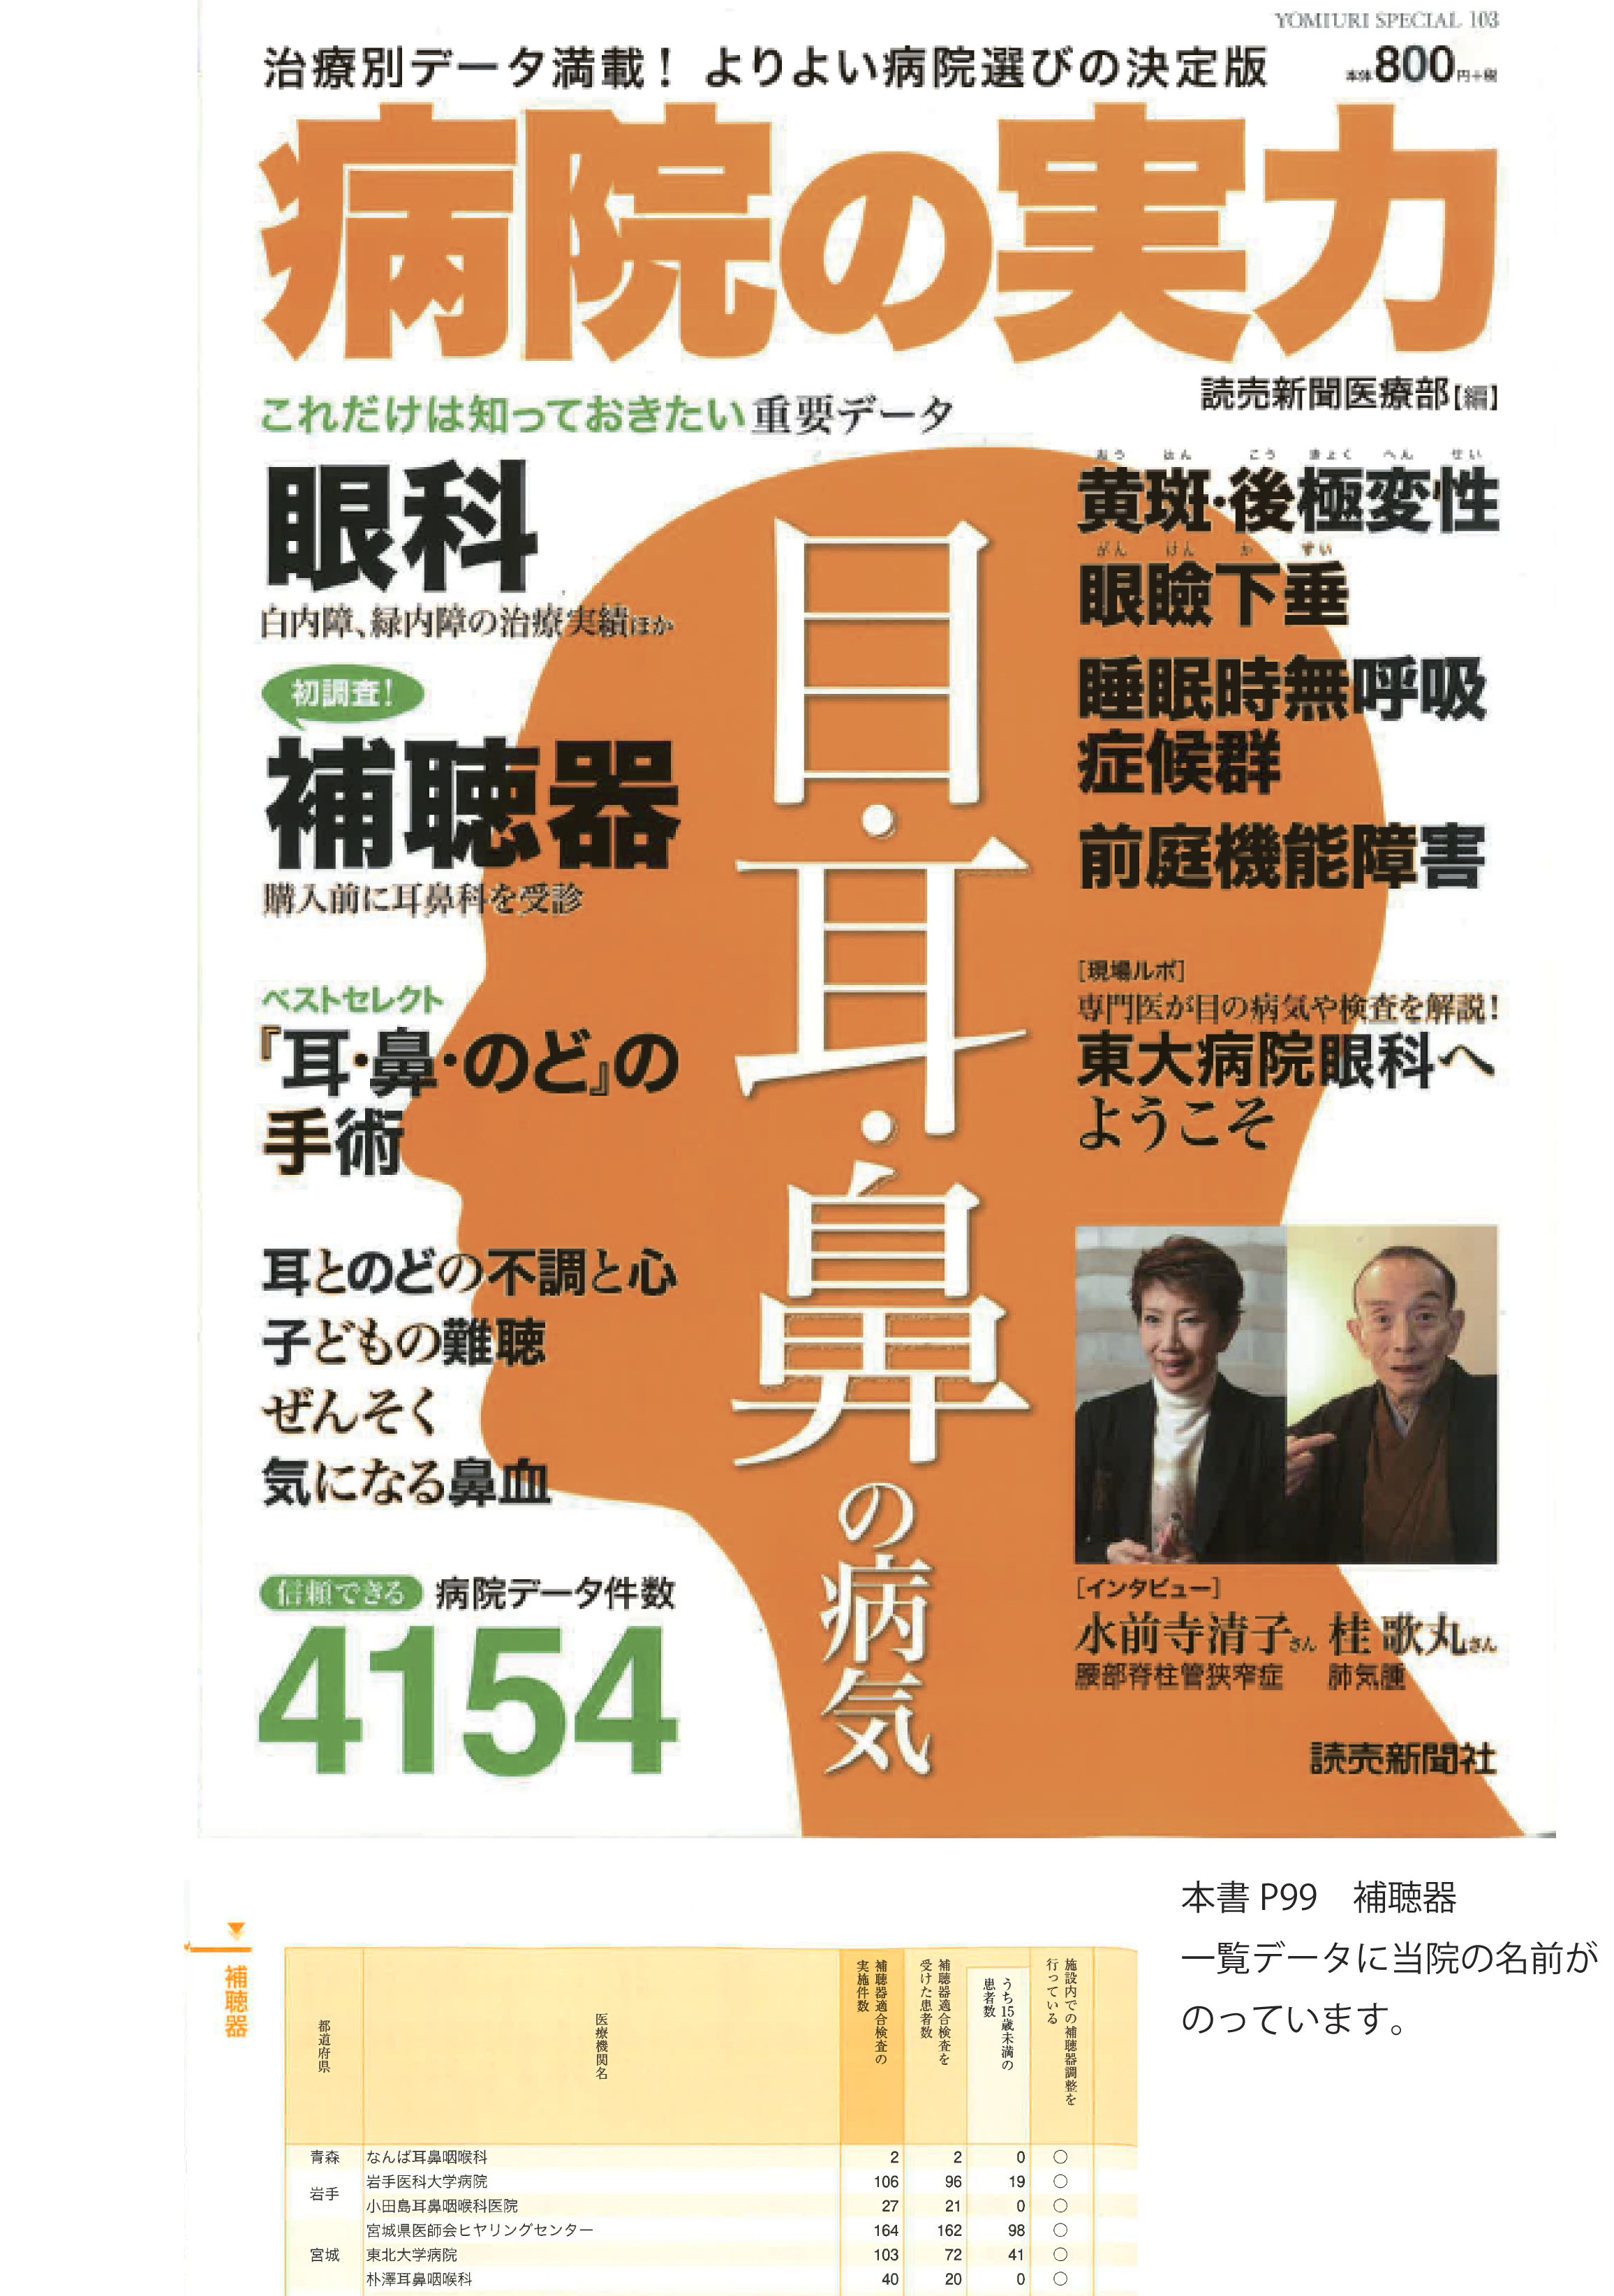 http://hozawa.jp/news/news_img/%E5%90%8D%E7%A7%B0%E6%9C%AA%E8%A8%AD%E5%AE%9A-1.jpg